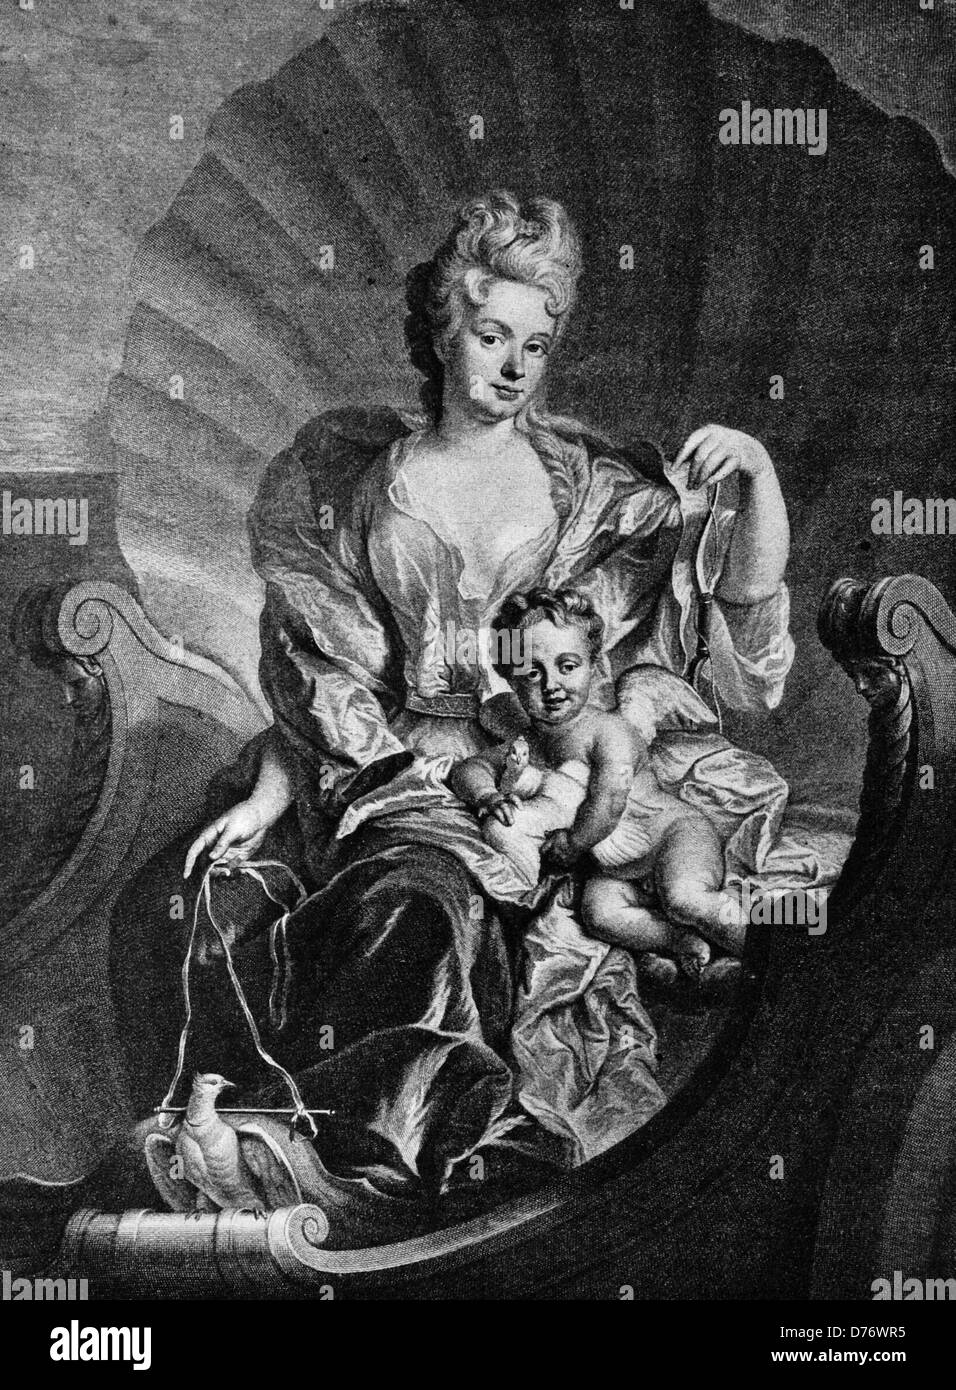 La comtesse Cosel, maîtresse d'Auguste le Fort historique que Vénus, gravure sur bois, vers 1865 Banque D'Images